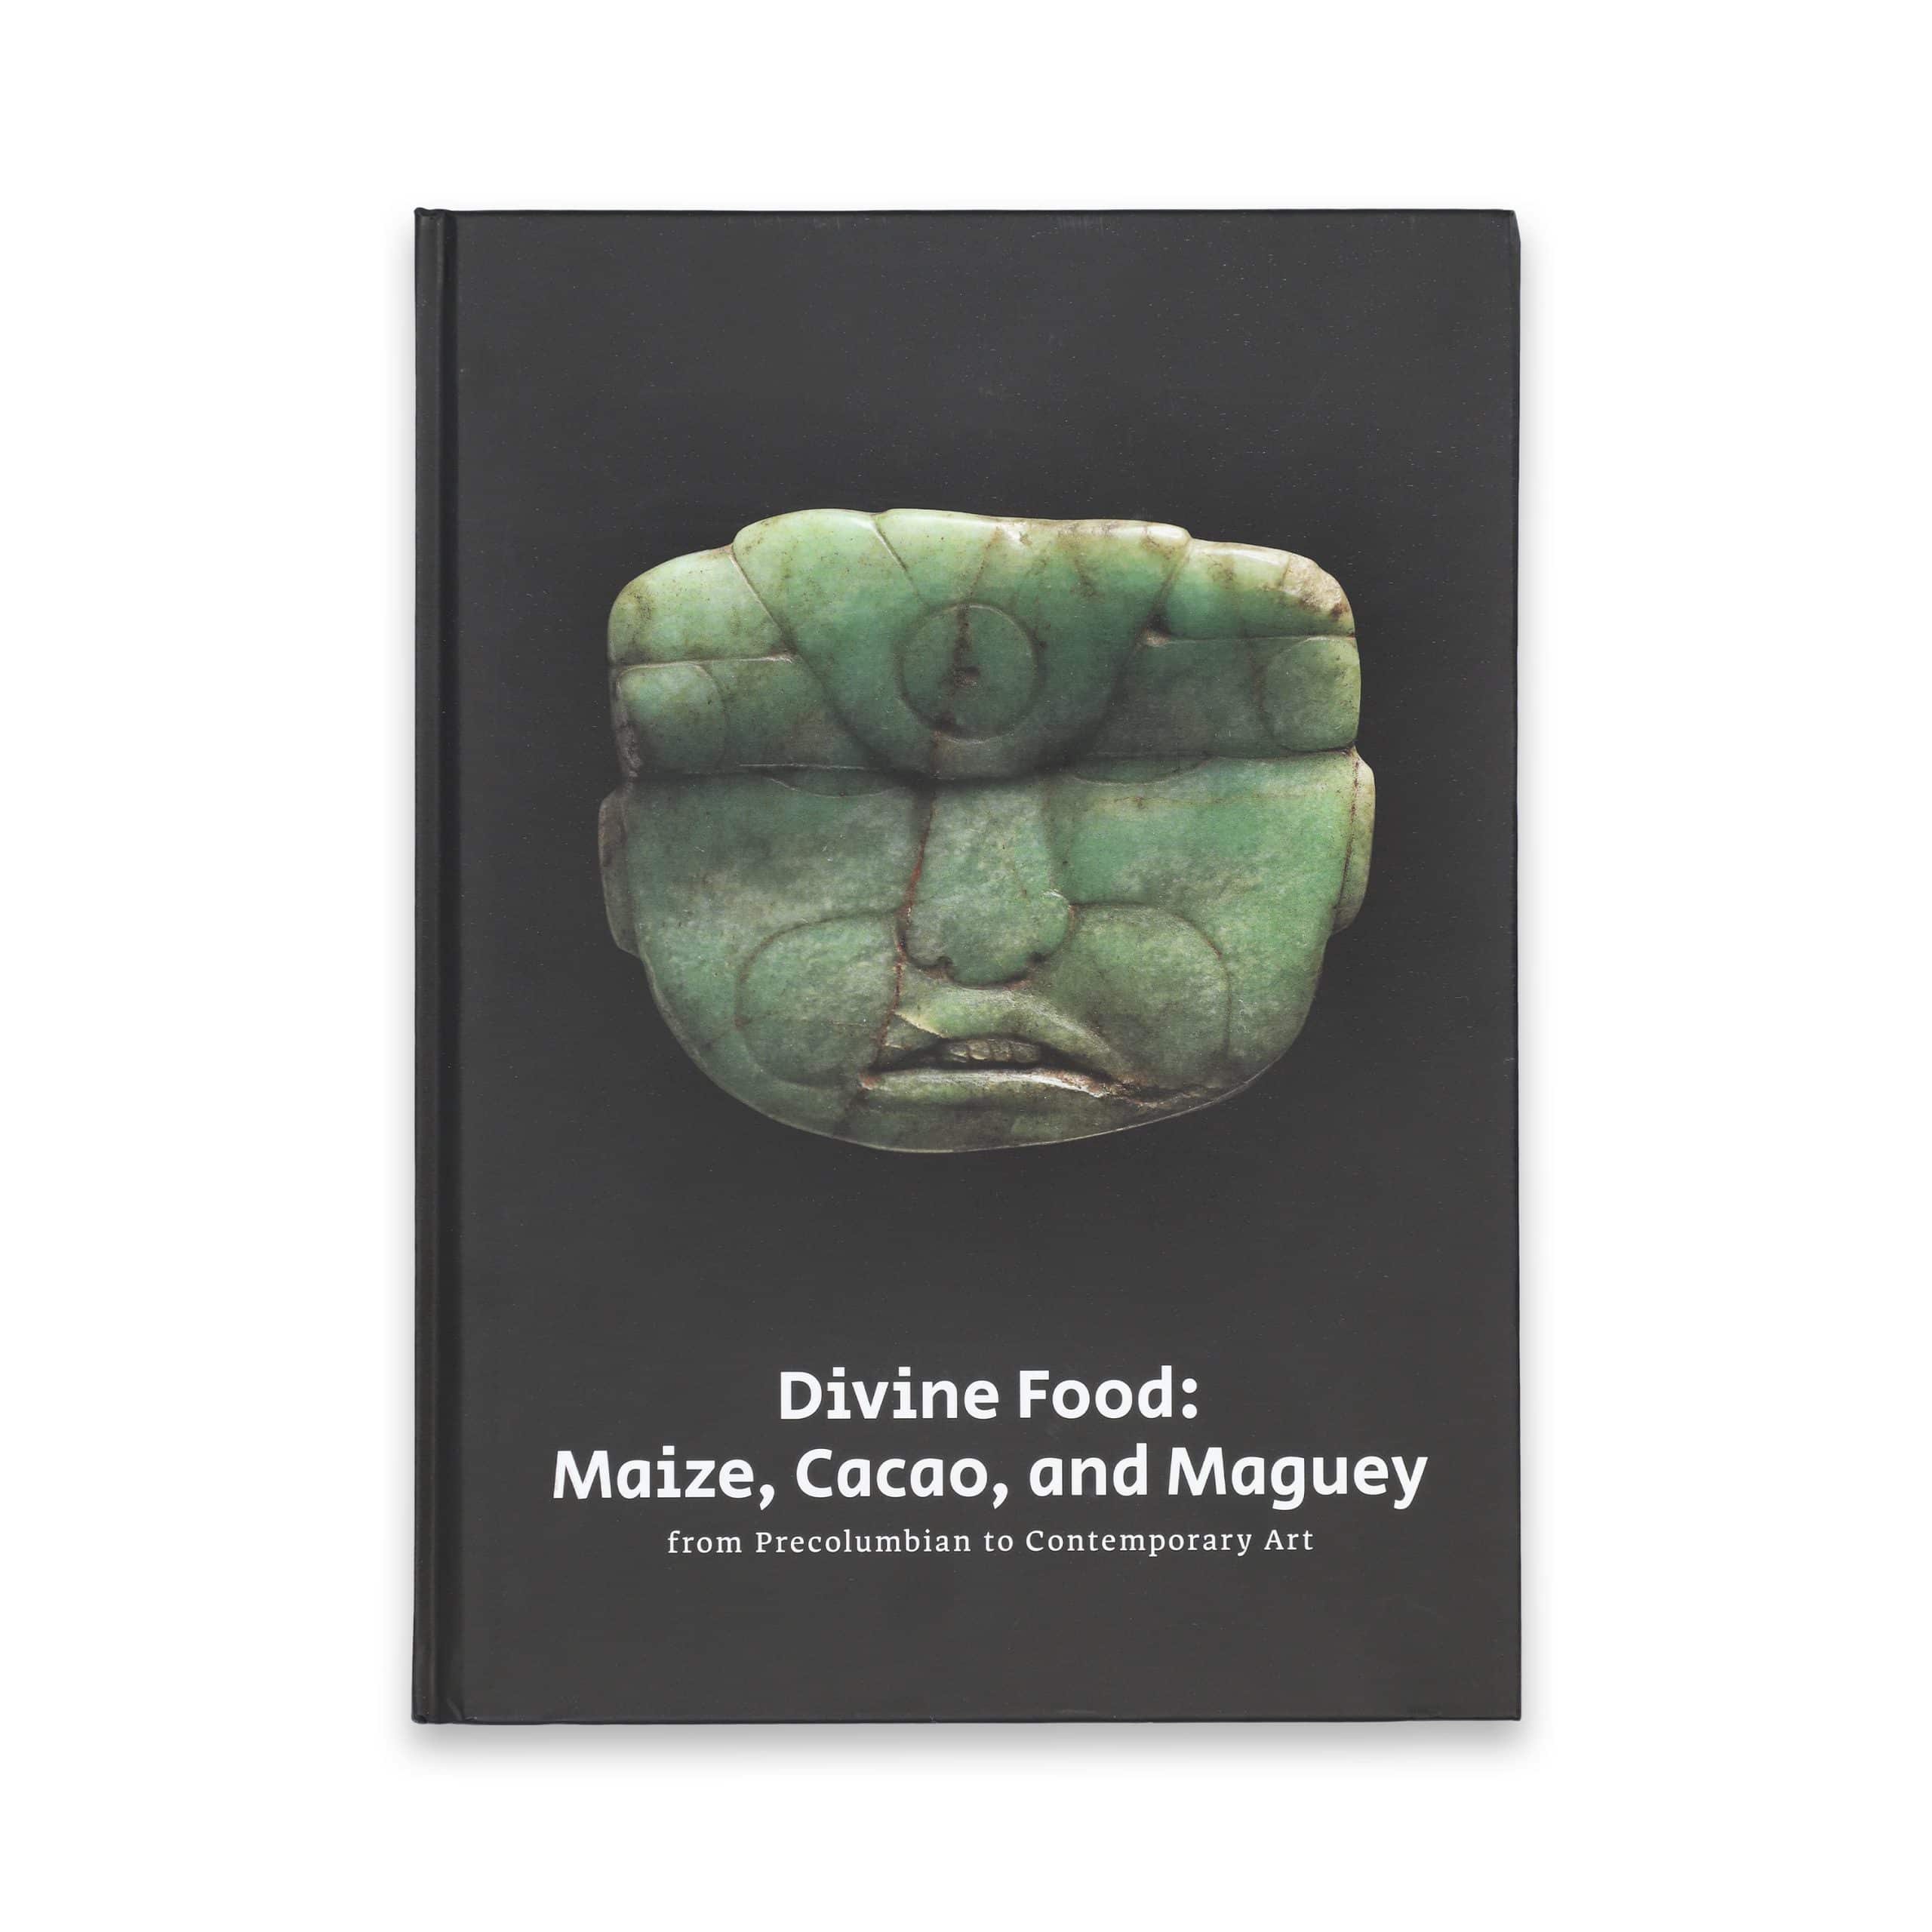 אלוהי התירס ואדוני הקקאו והמאגיי: מתרבויות אמריקה הקדומות עד לאמנות עכשווית